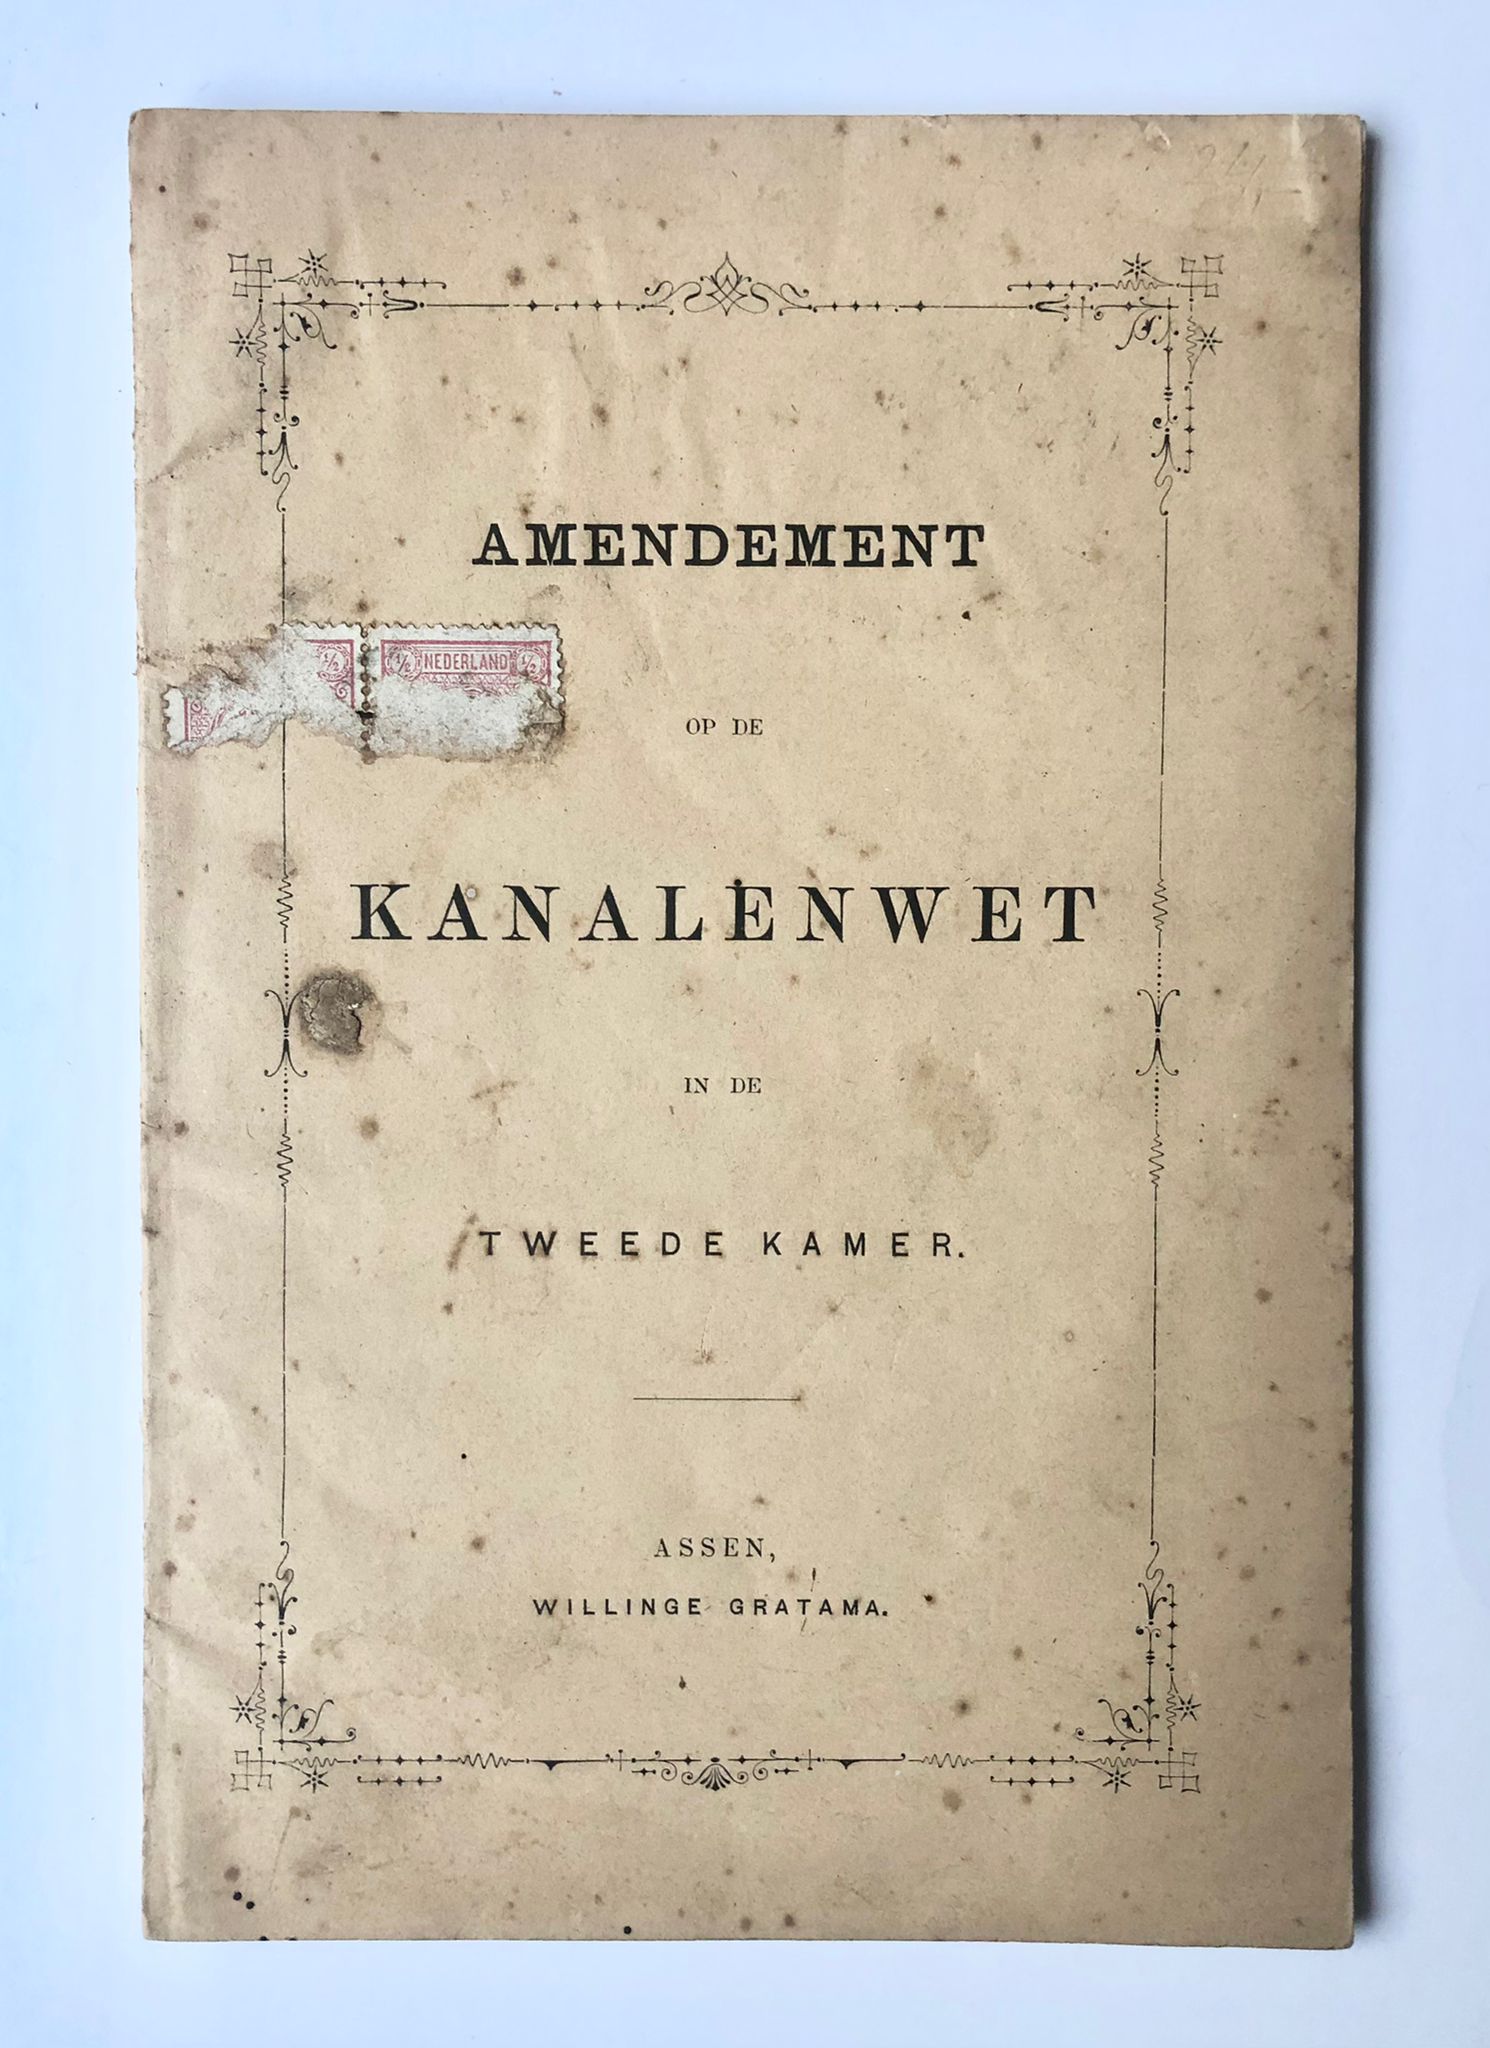 [Drenthe, 1880] Amendement op de kanalenwet in de Tweede Kamer, Willinge Gratama, Assen, 1880, 11 pp.